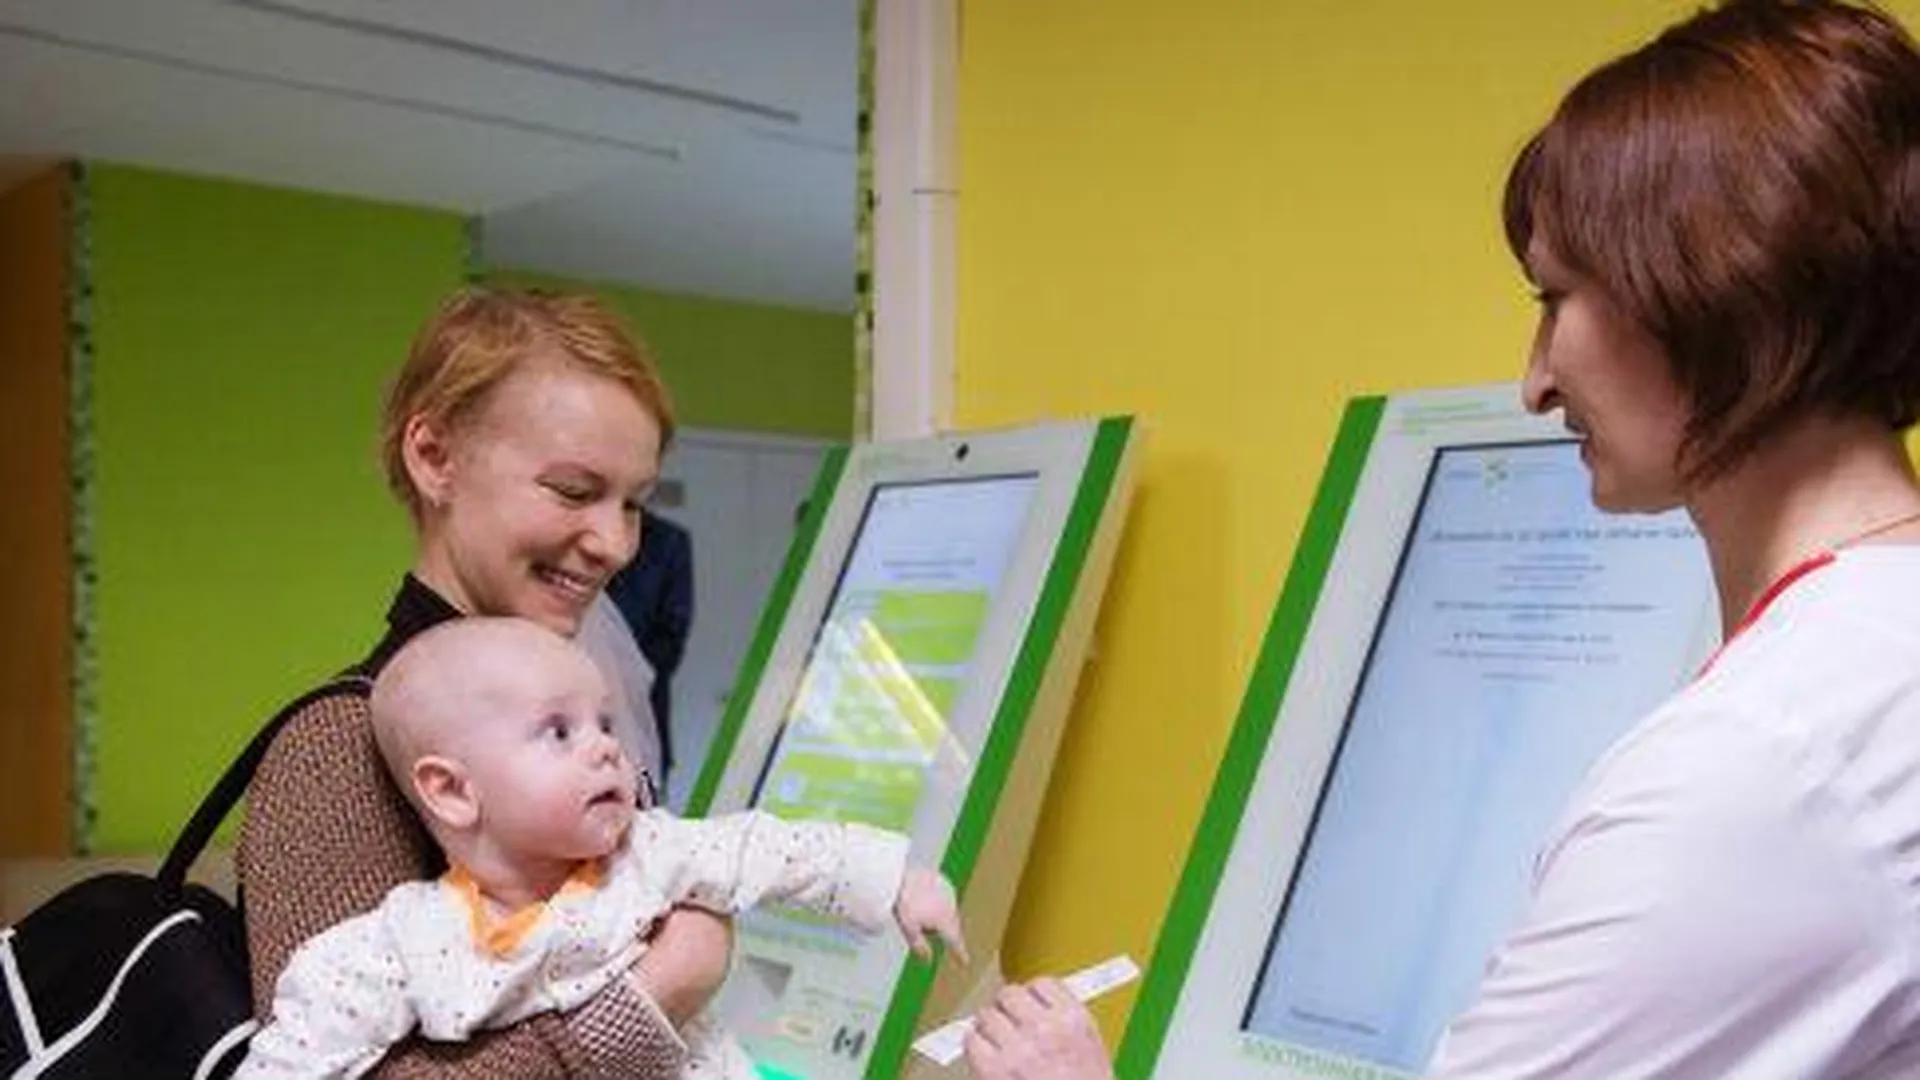 Свыше 1 млн посещений врачей МО оформлено в электронном виде - Забралова